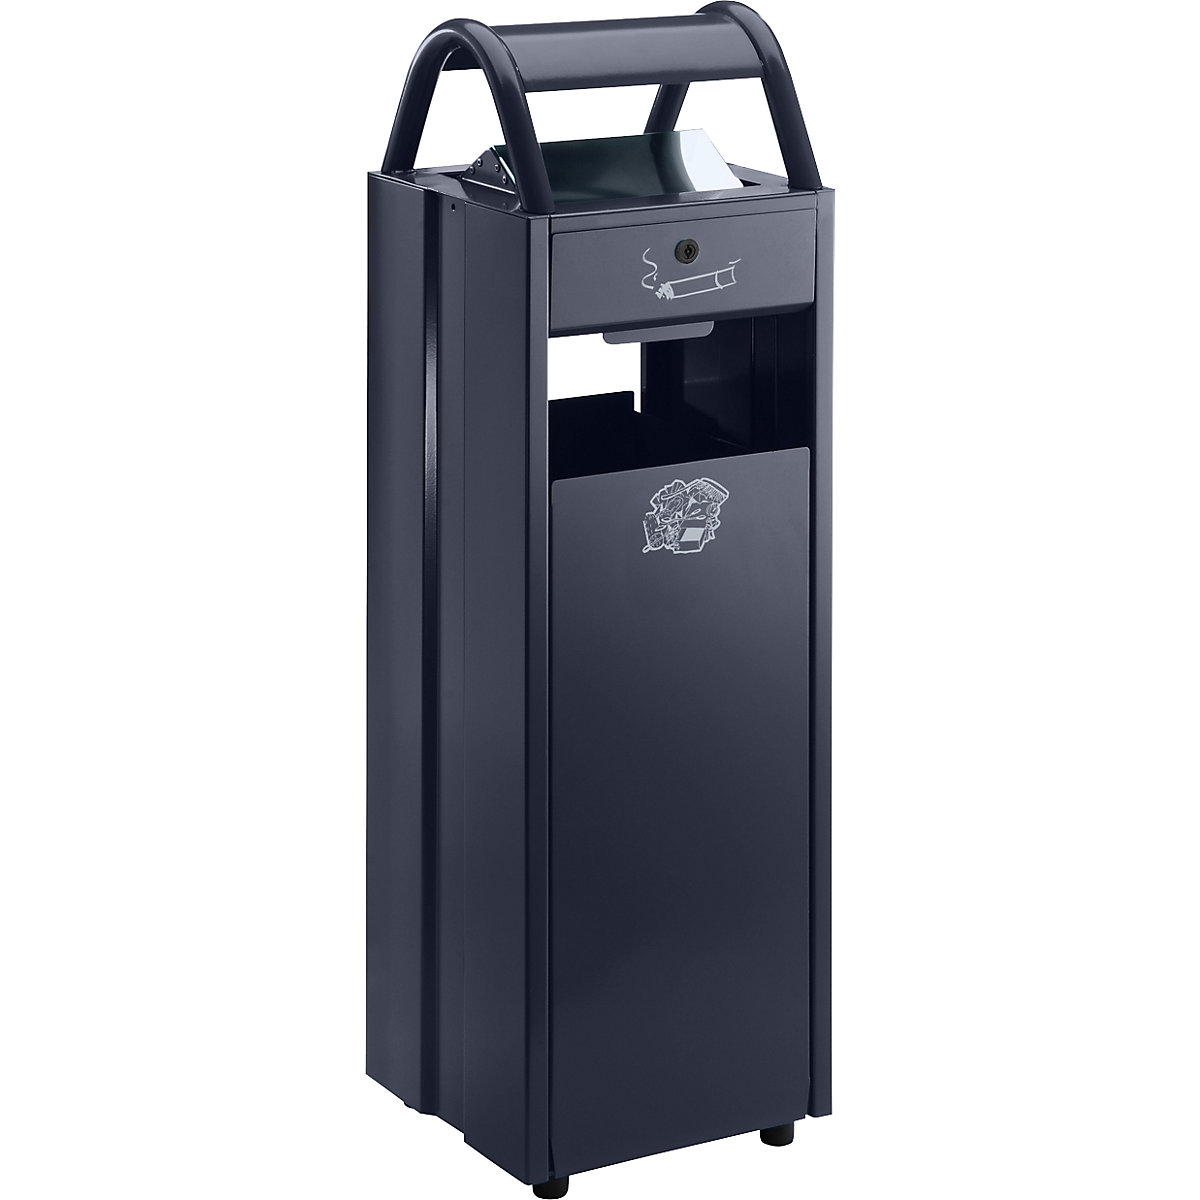 Sběrač odpadů s popelníkem a ochrannou stříškou proti dešti – VAR, objem 35 l, š x v x h 300 x 960 x 250 mm, černošedá RAL 7021